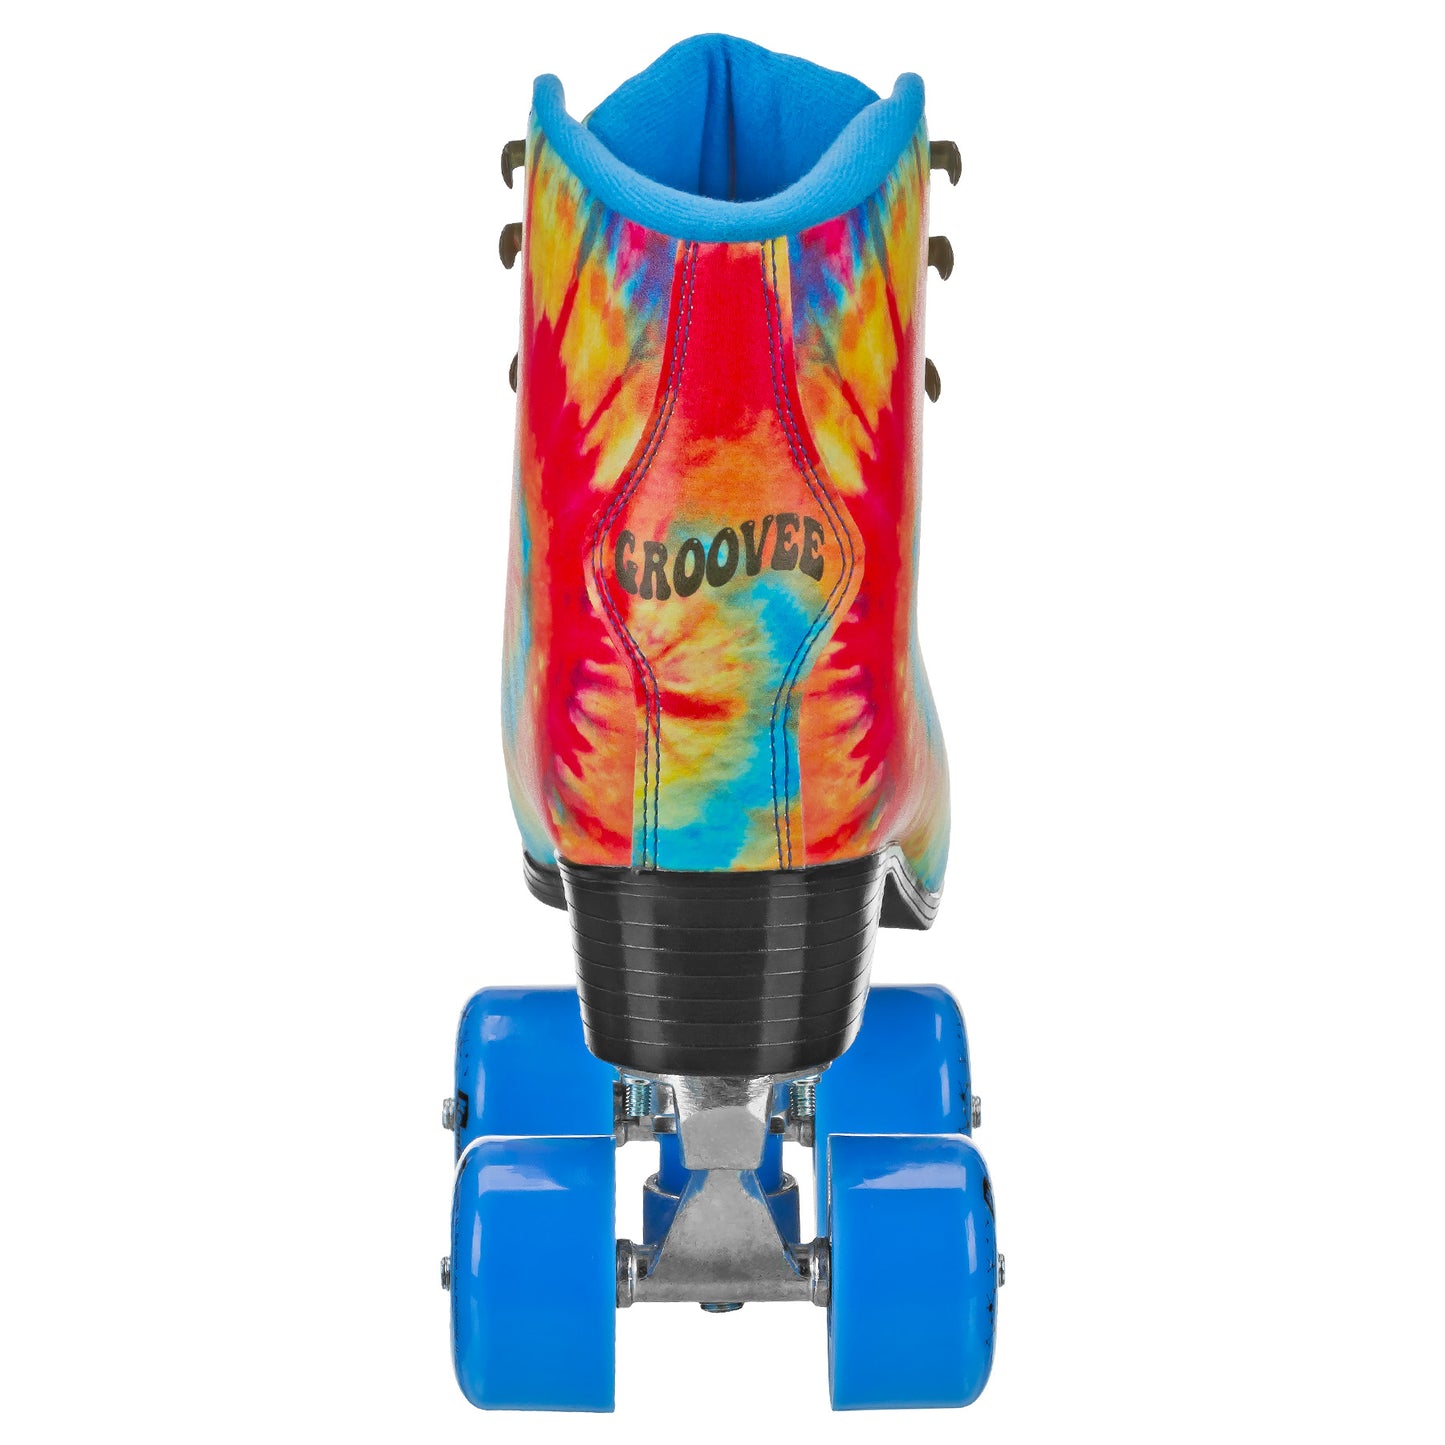 Groovee Tie Dye Freestyle Roller Skates